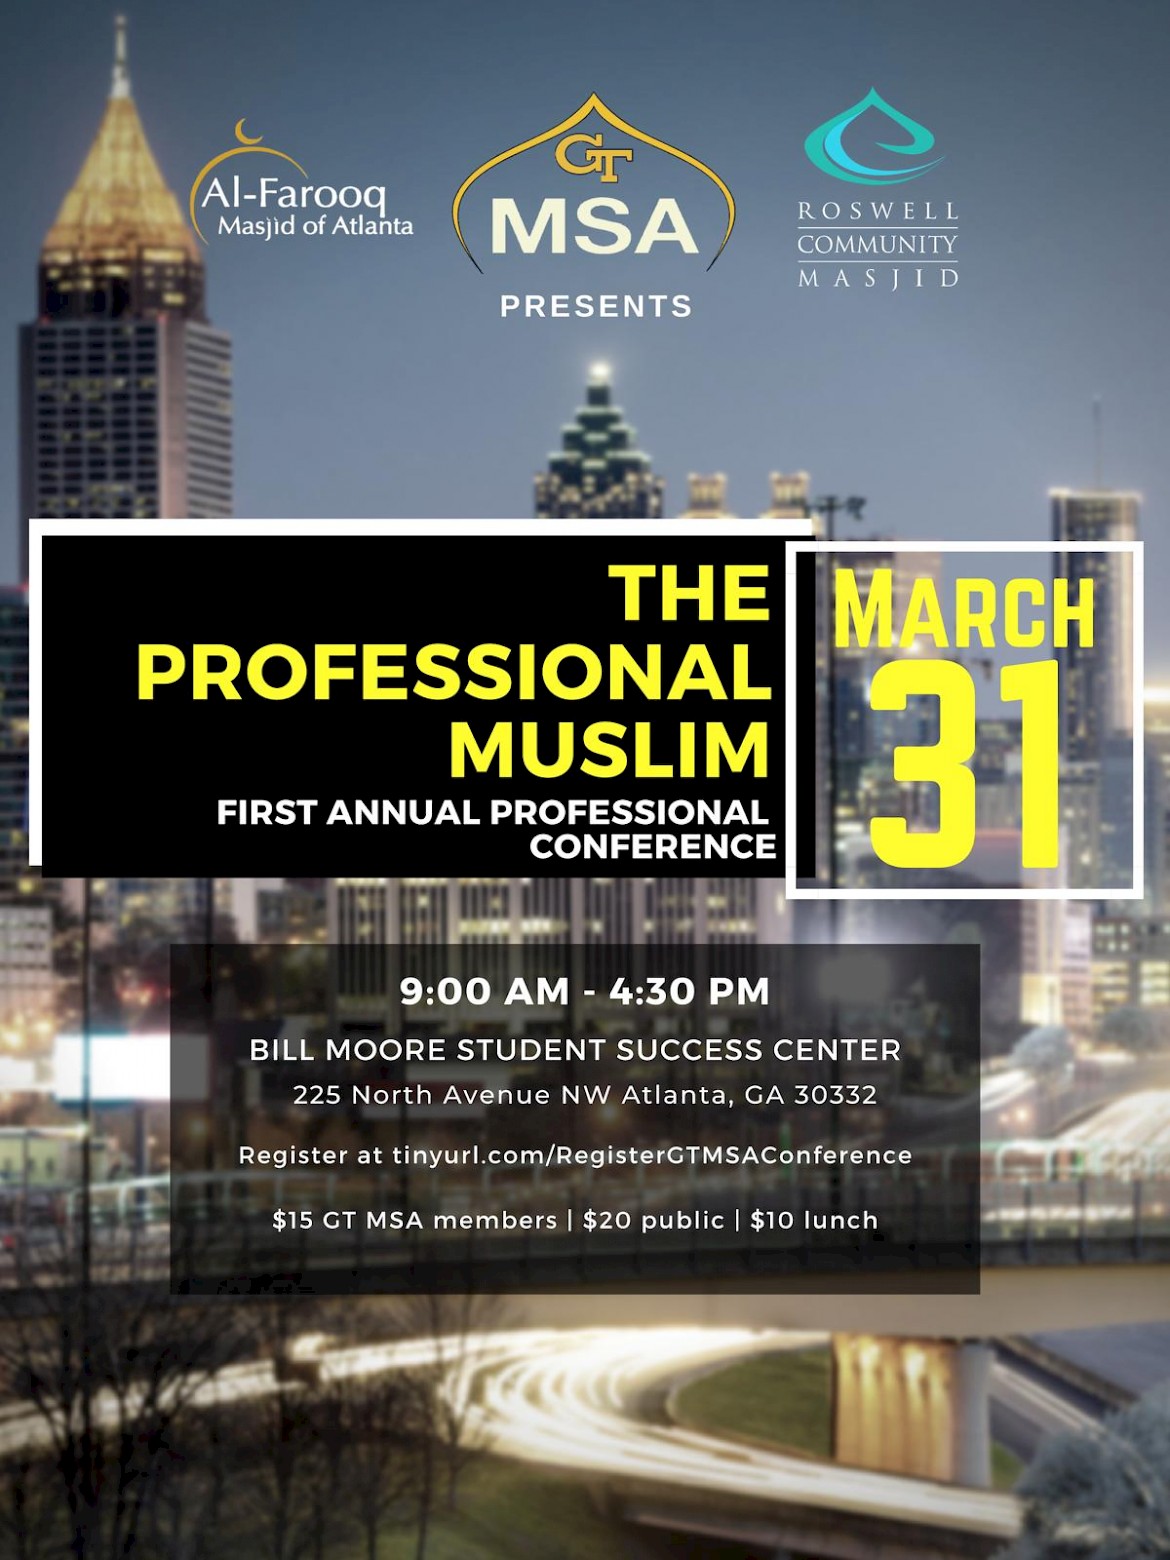 First Annual Professional Muslim Conference AlFarooq Masjid